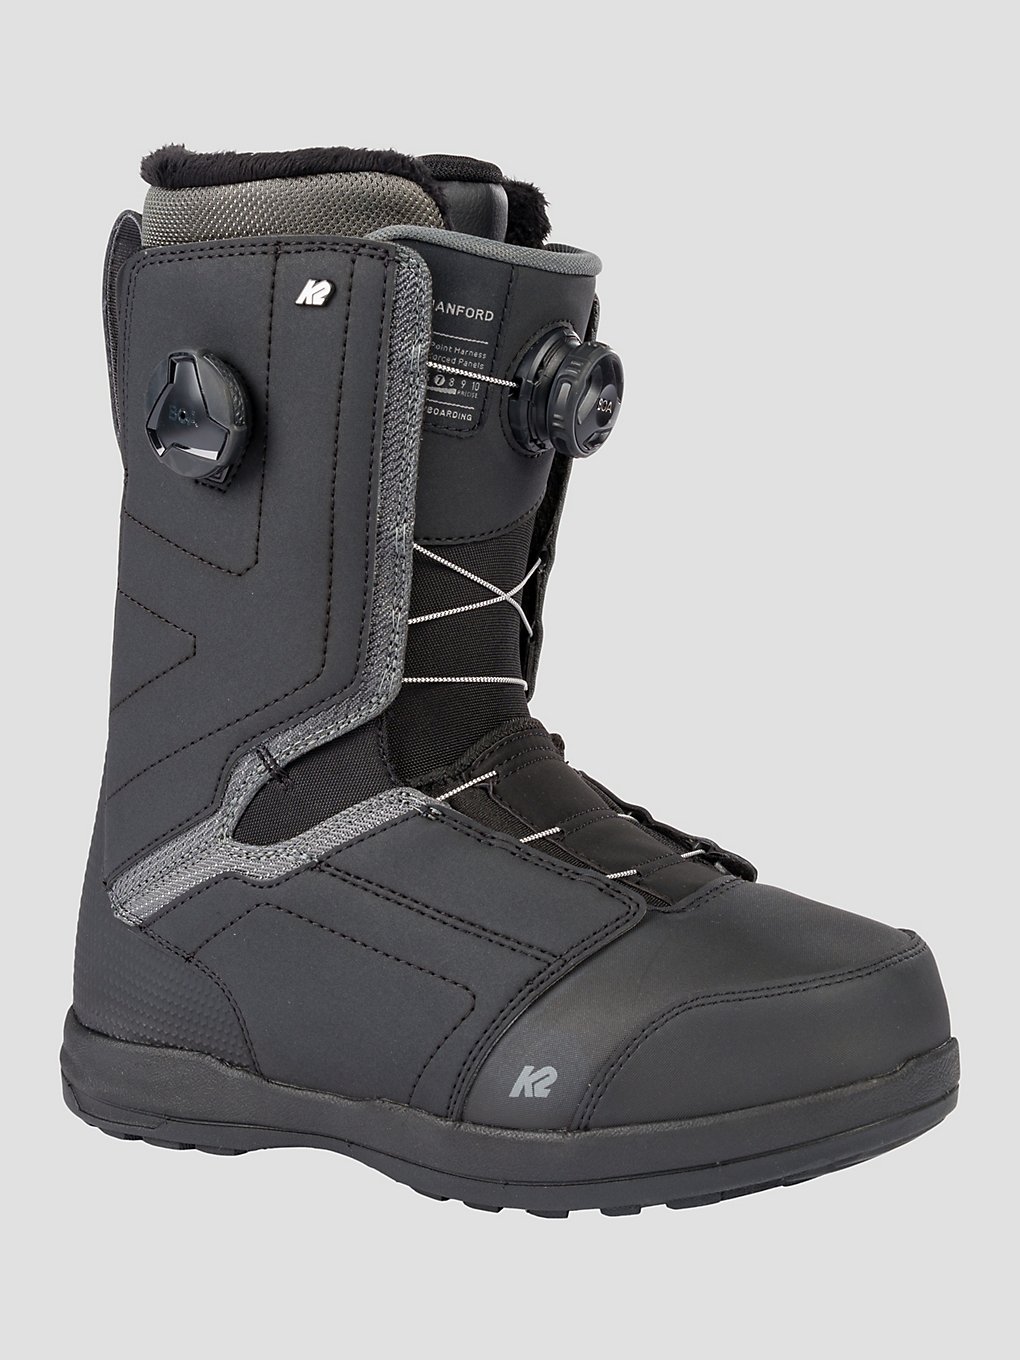 K2 Hanford 2023 Snowboard-Boots black kaufen